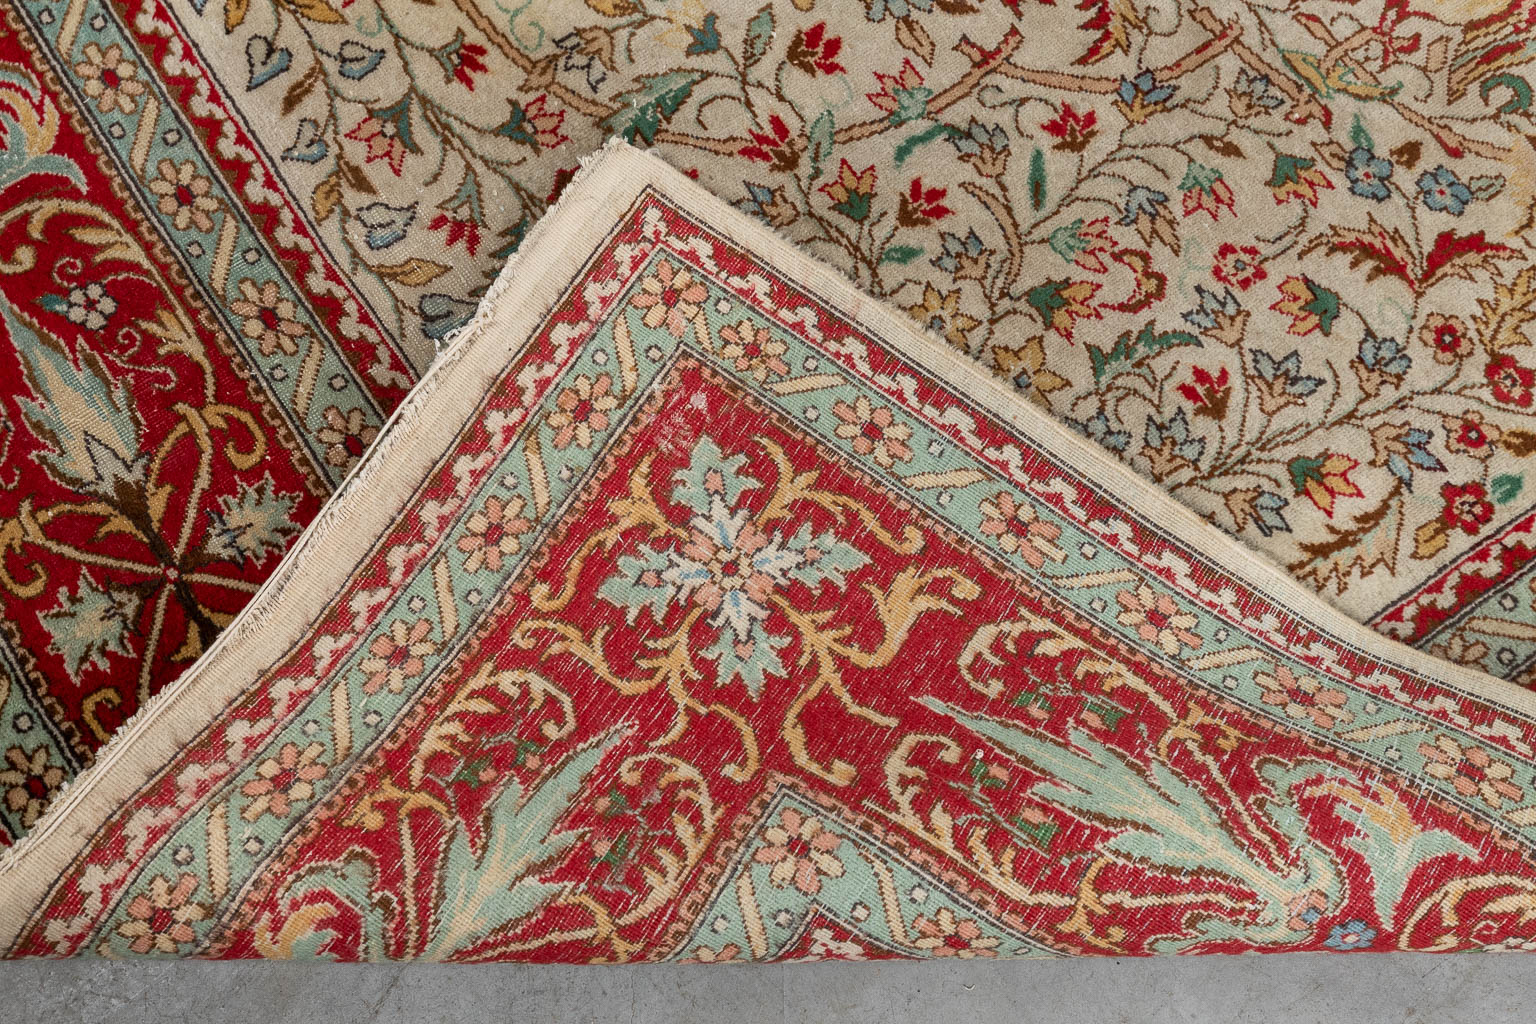 An Oriental hand-made carpet, Tabriz. (D:354 x W:254 cm)